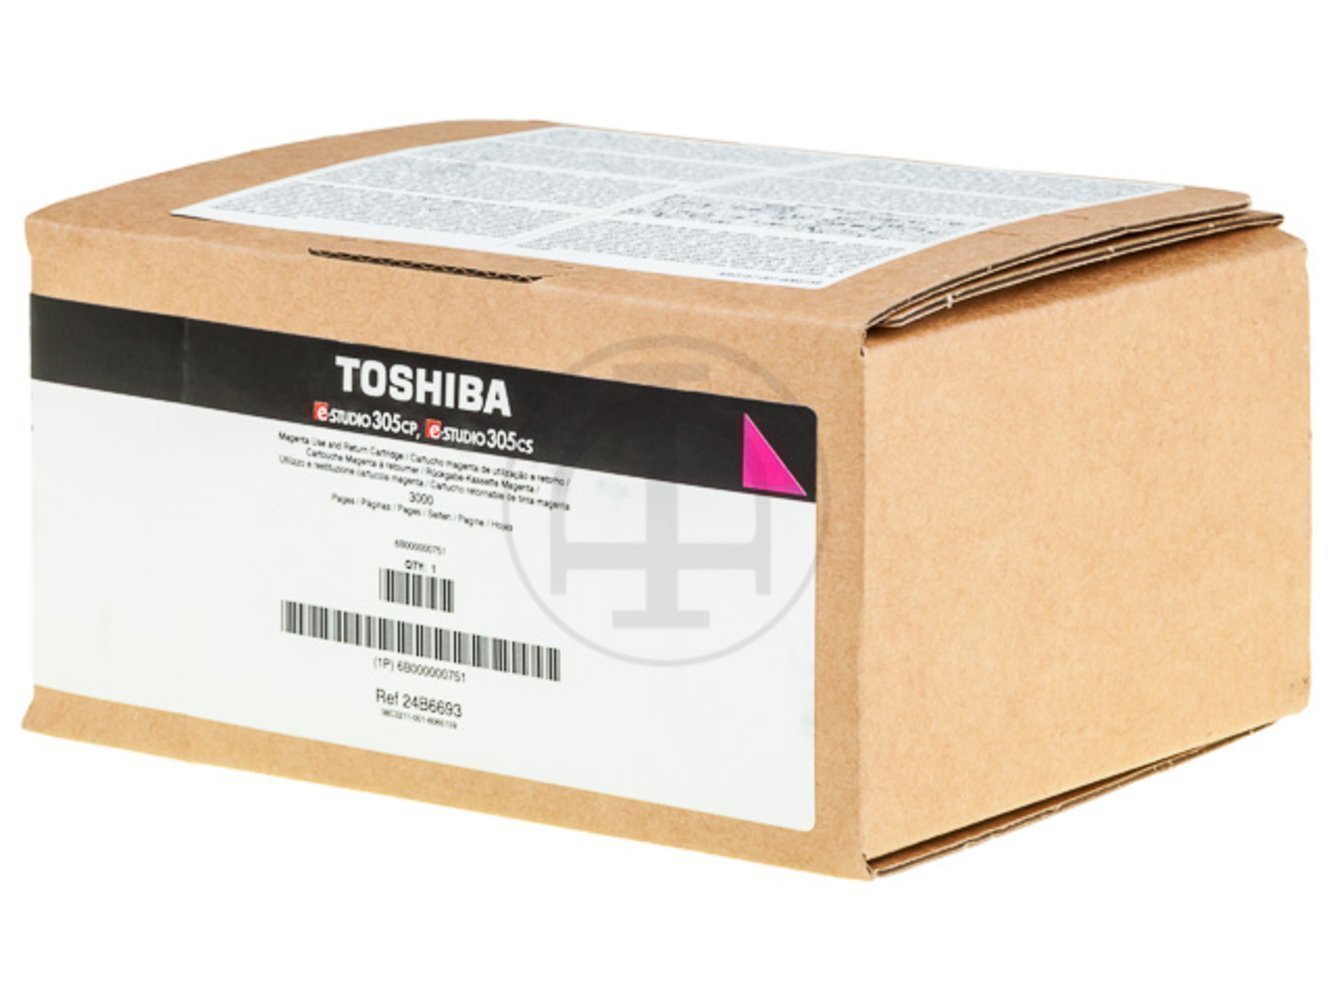 Toshiba Druckerpatrone mit 3000 Seiten Lebensdauer